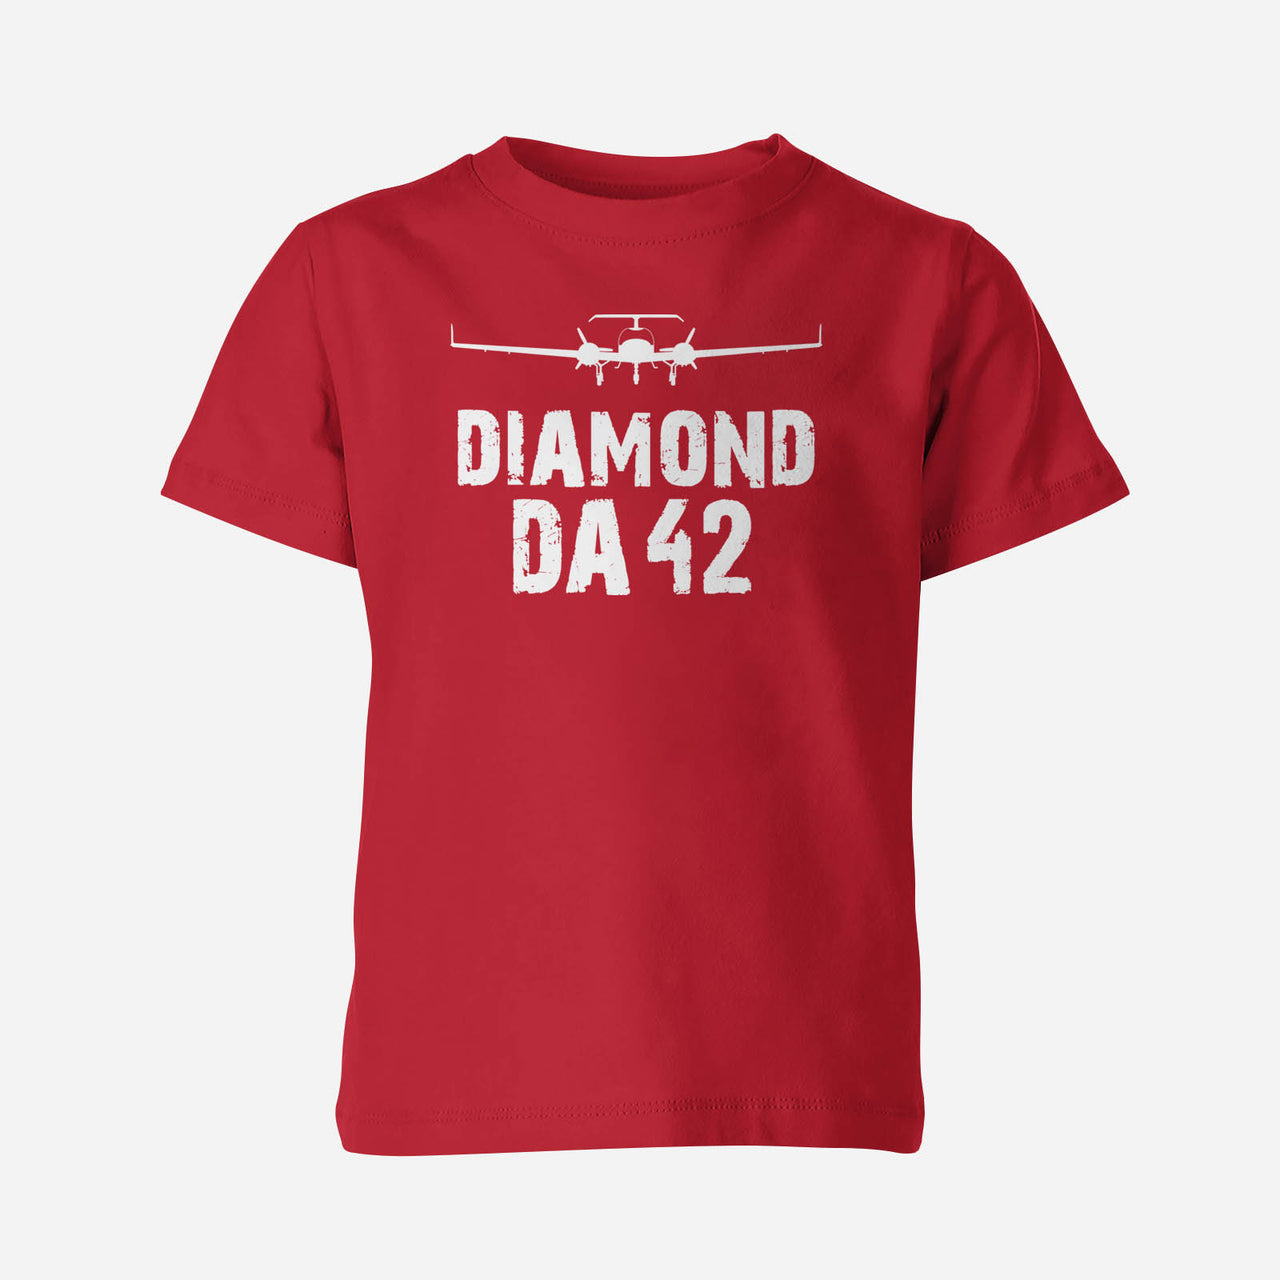 Diamond DA42 & Plane Designed Children T-Shirts